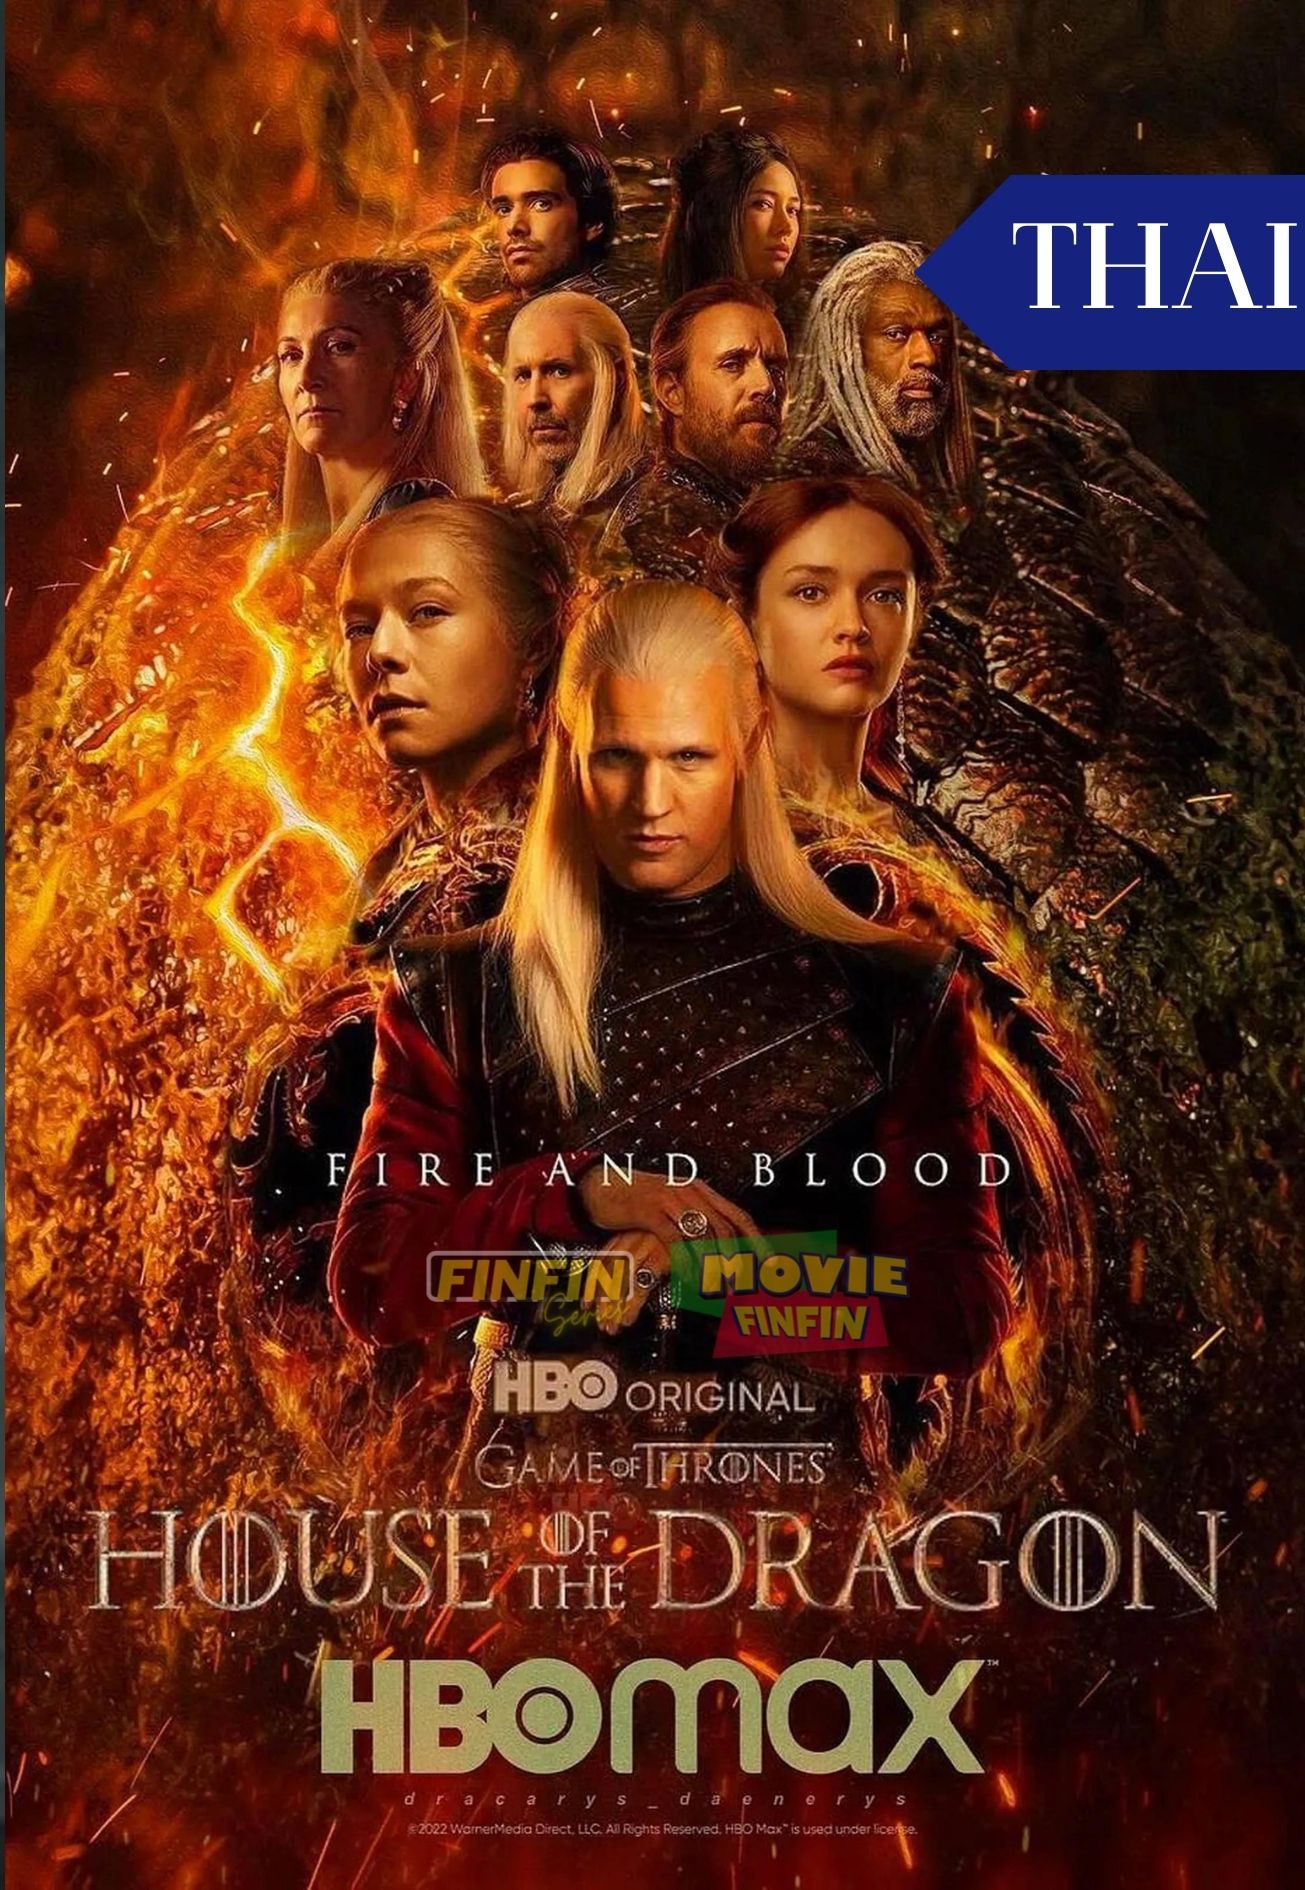 House of the Dragon (2022) เฮาส์ ออฟ เดอะ ดราก้อน ตระกูลแห่งมังกร